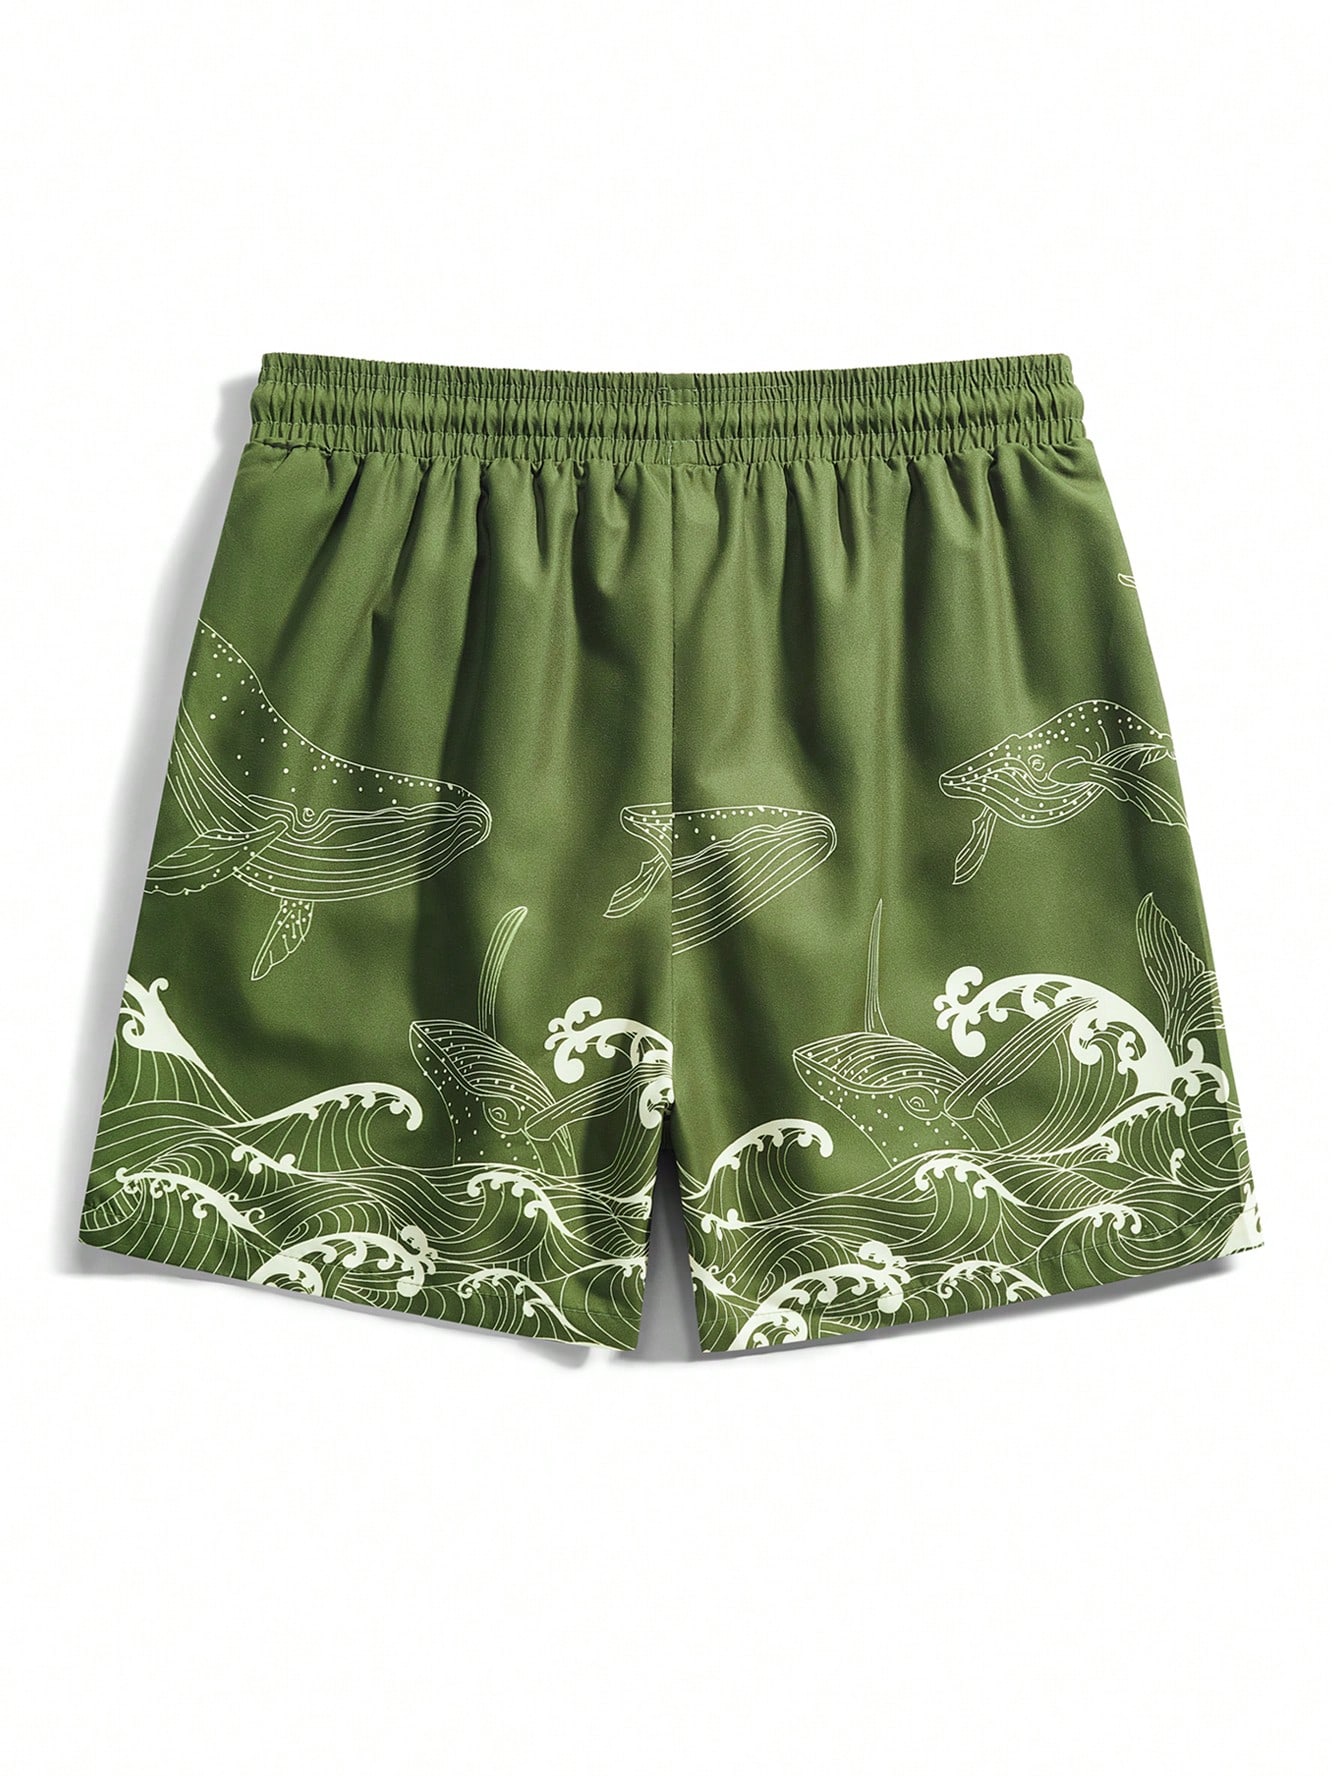 Мужские пляжные шорты Manfinity с мультяшным принтом и завязками на талии, армейский зеленый